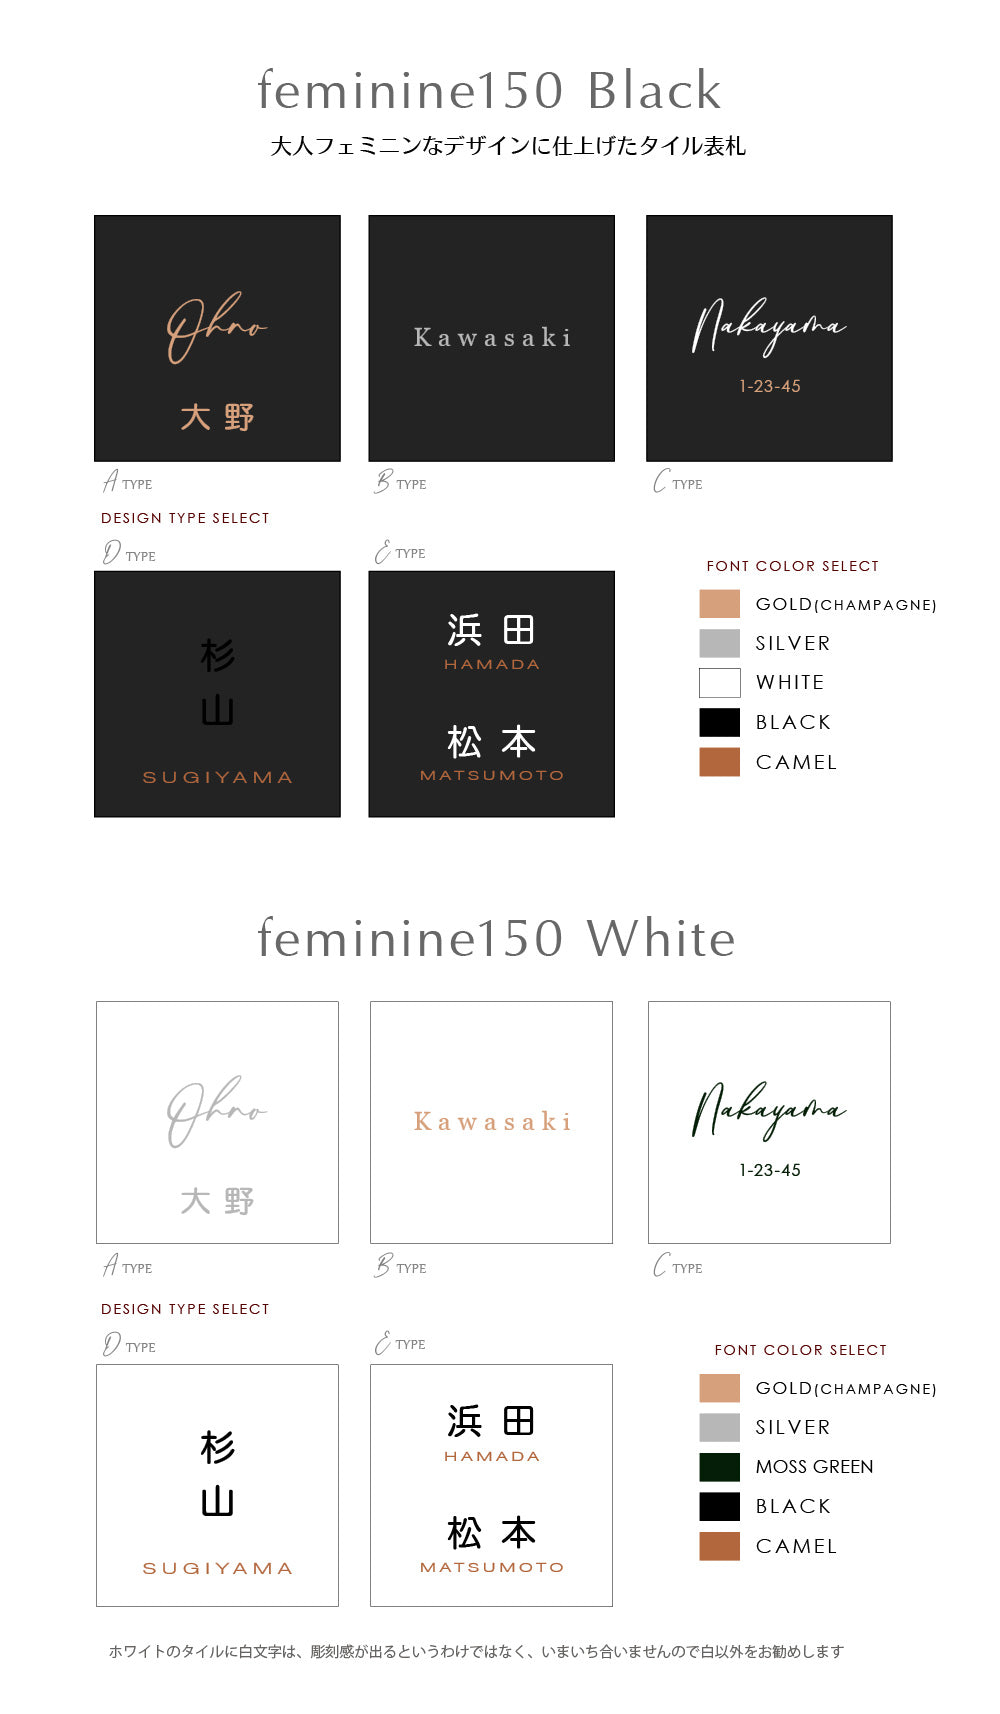 大人フェミニンなデザインのタイル表札